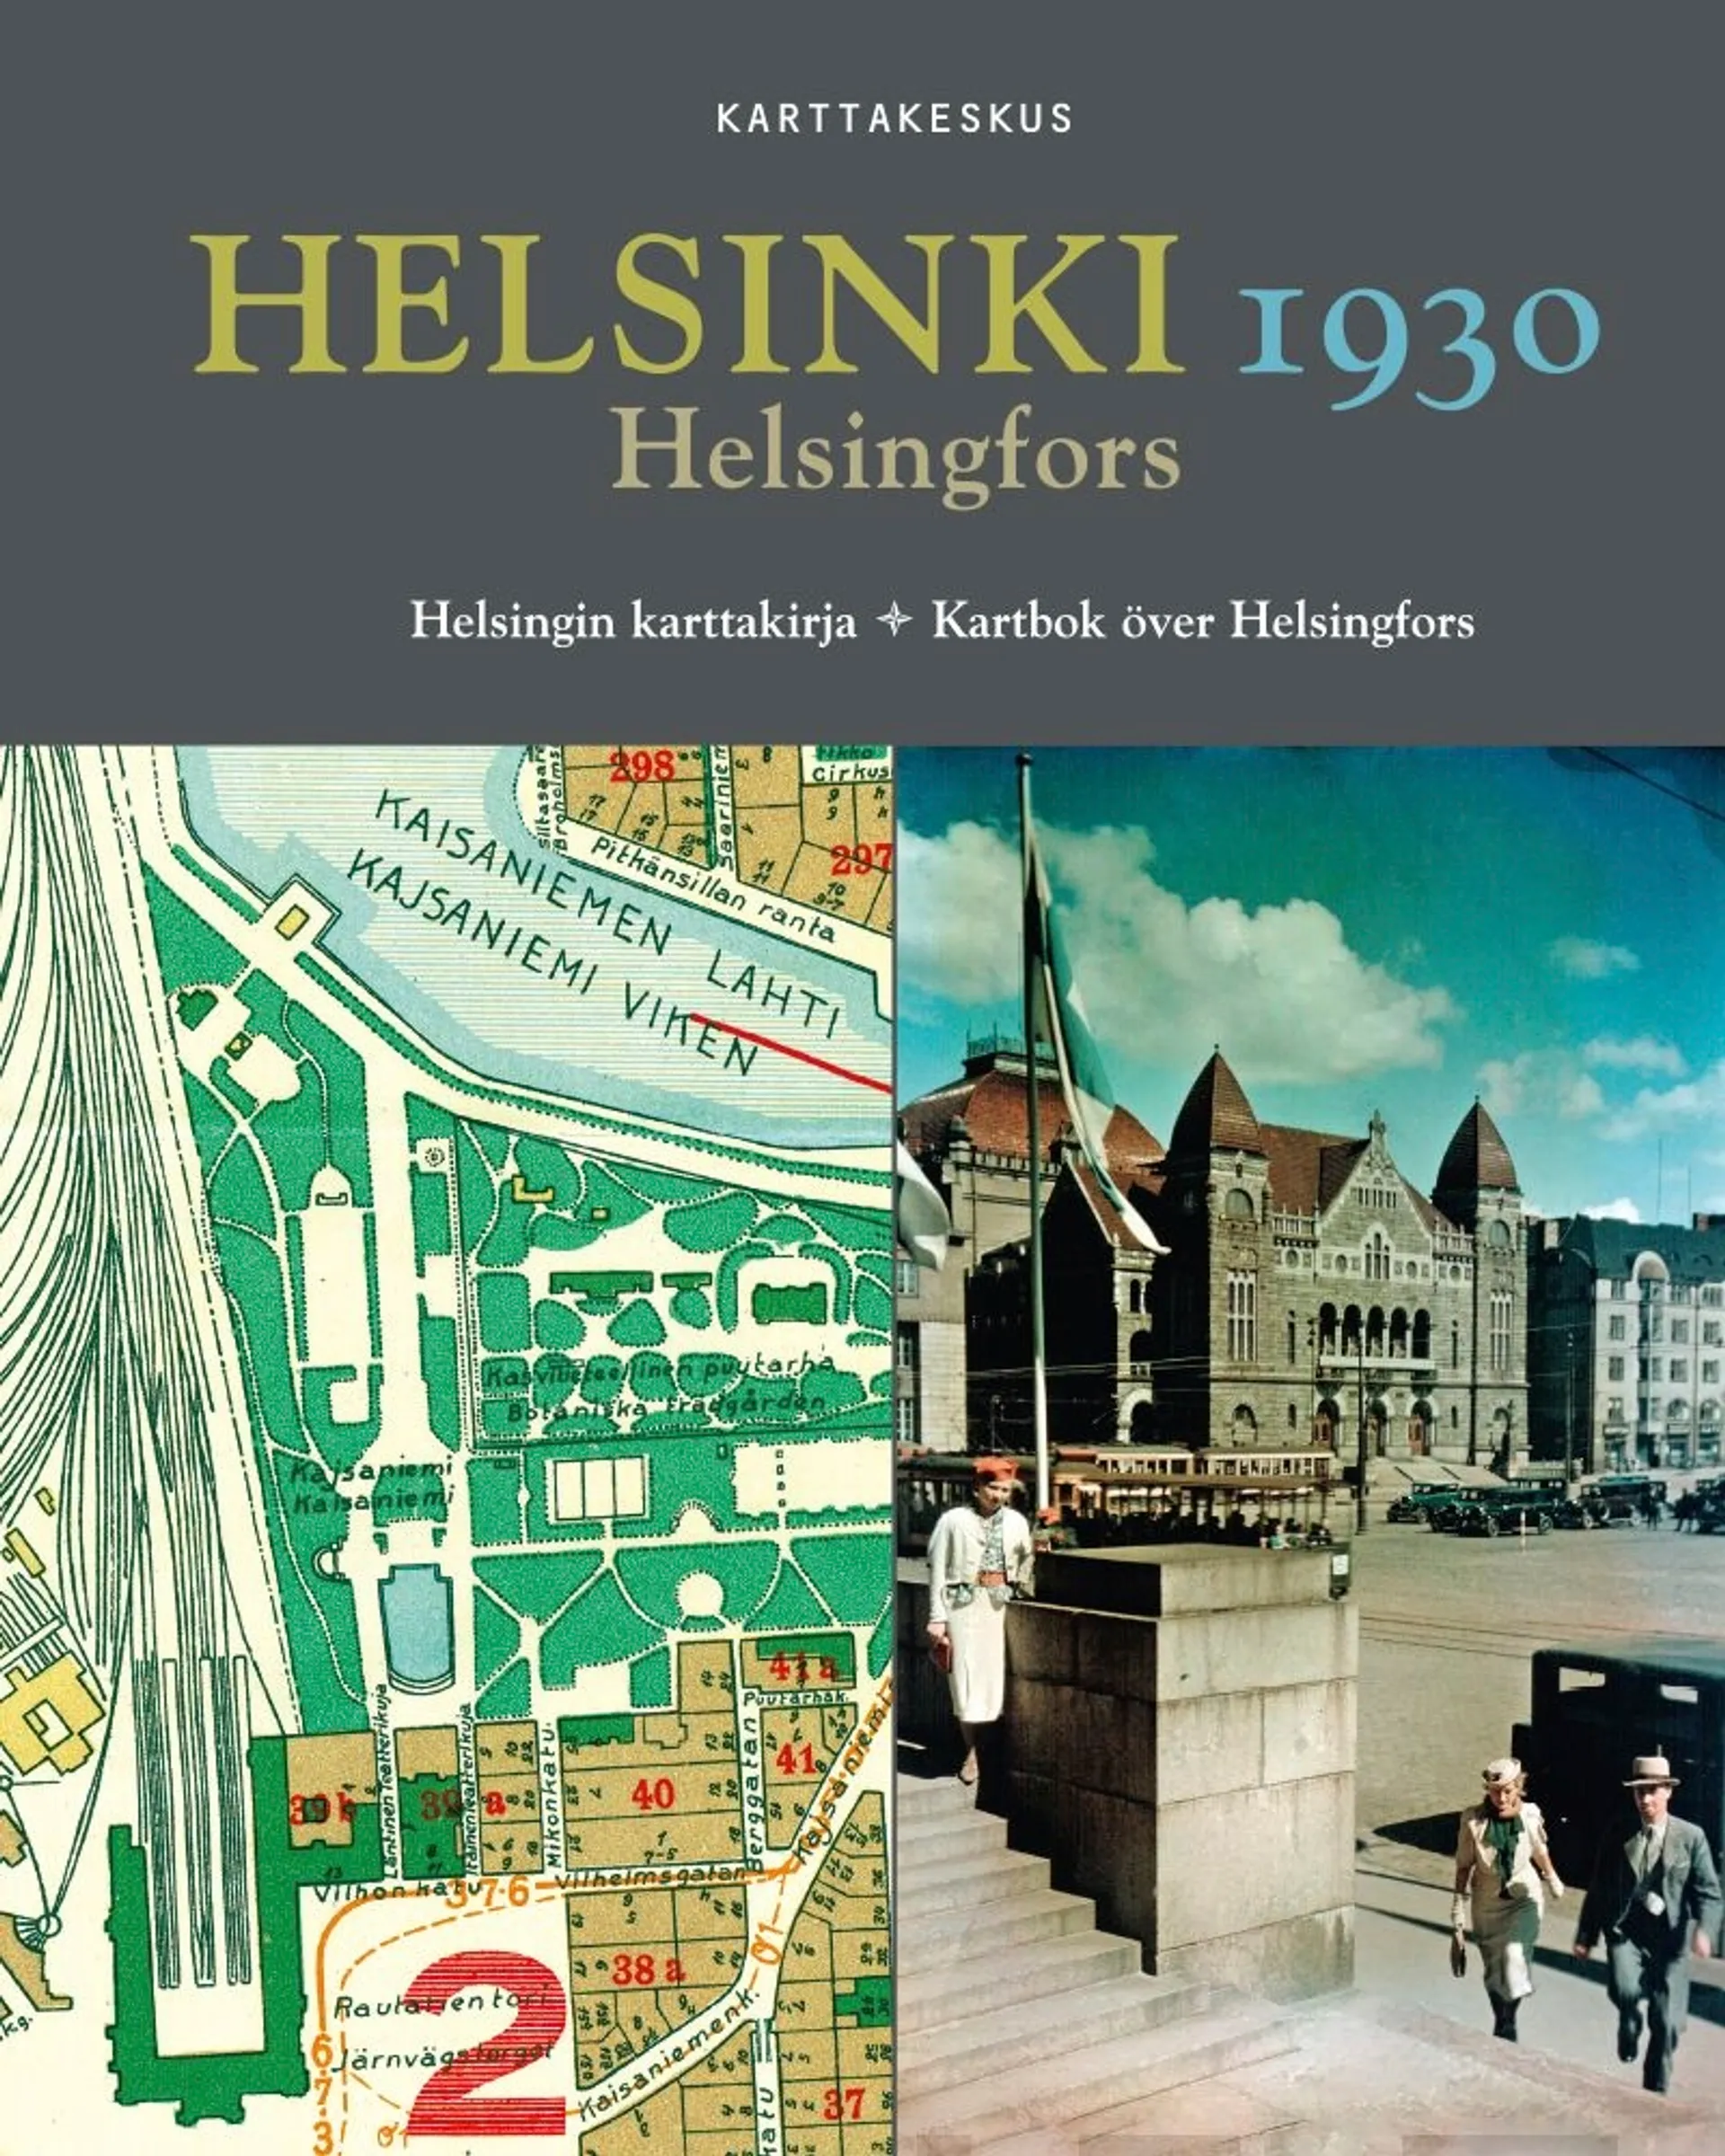 Helsinki 1930